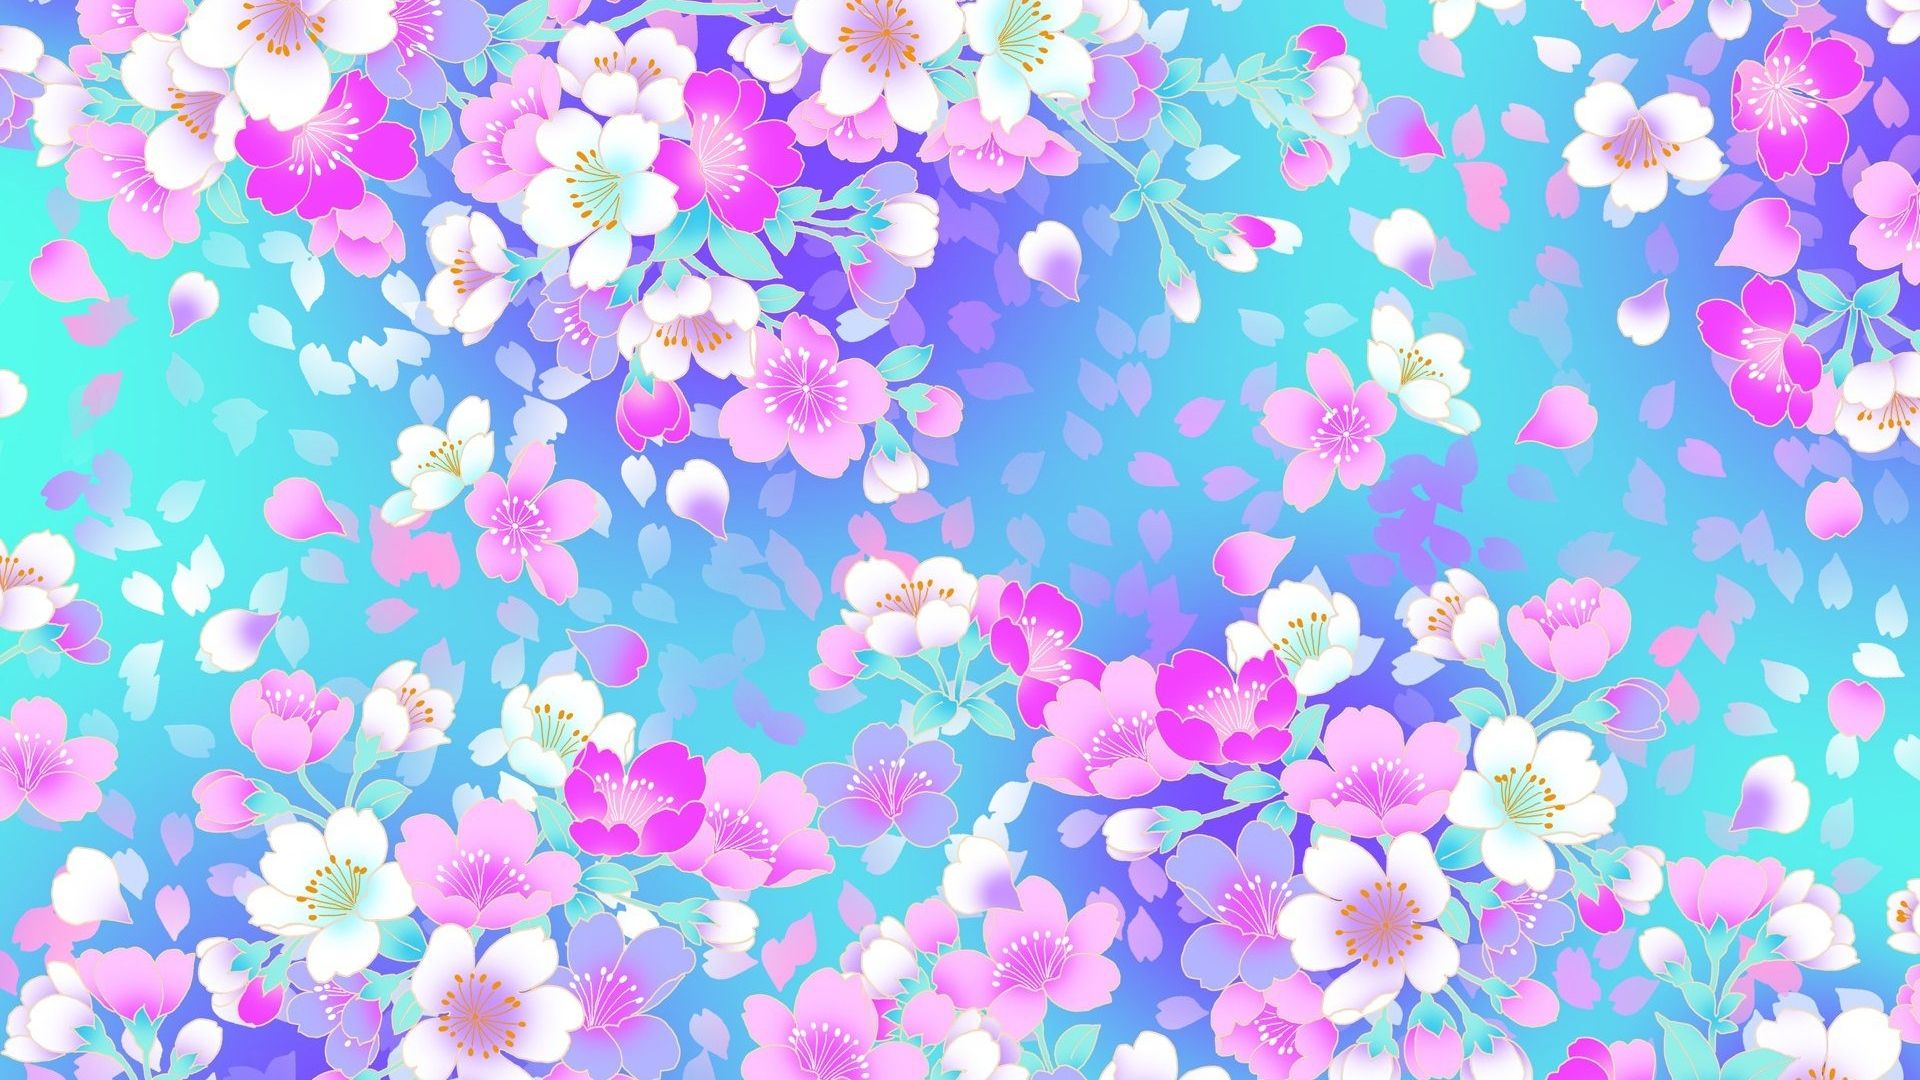 Free download Anime Flowers wallpaper .wallpaperafari.com